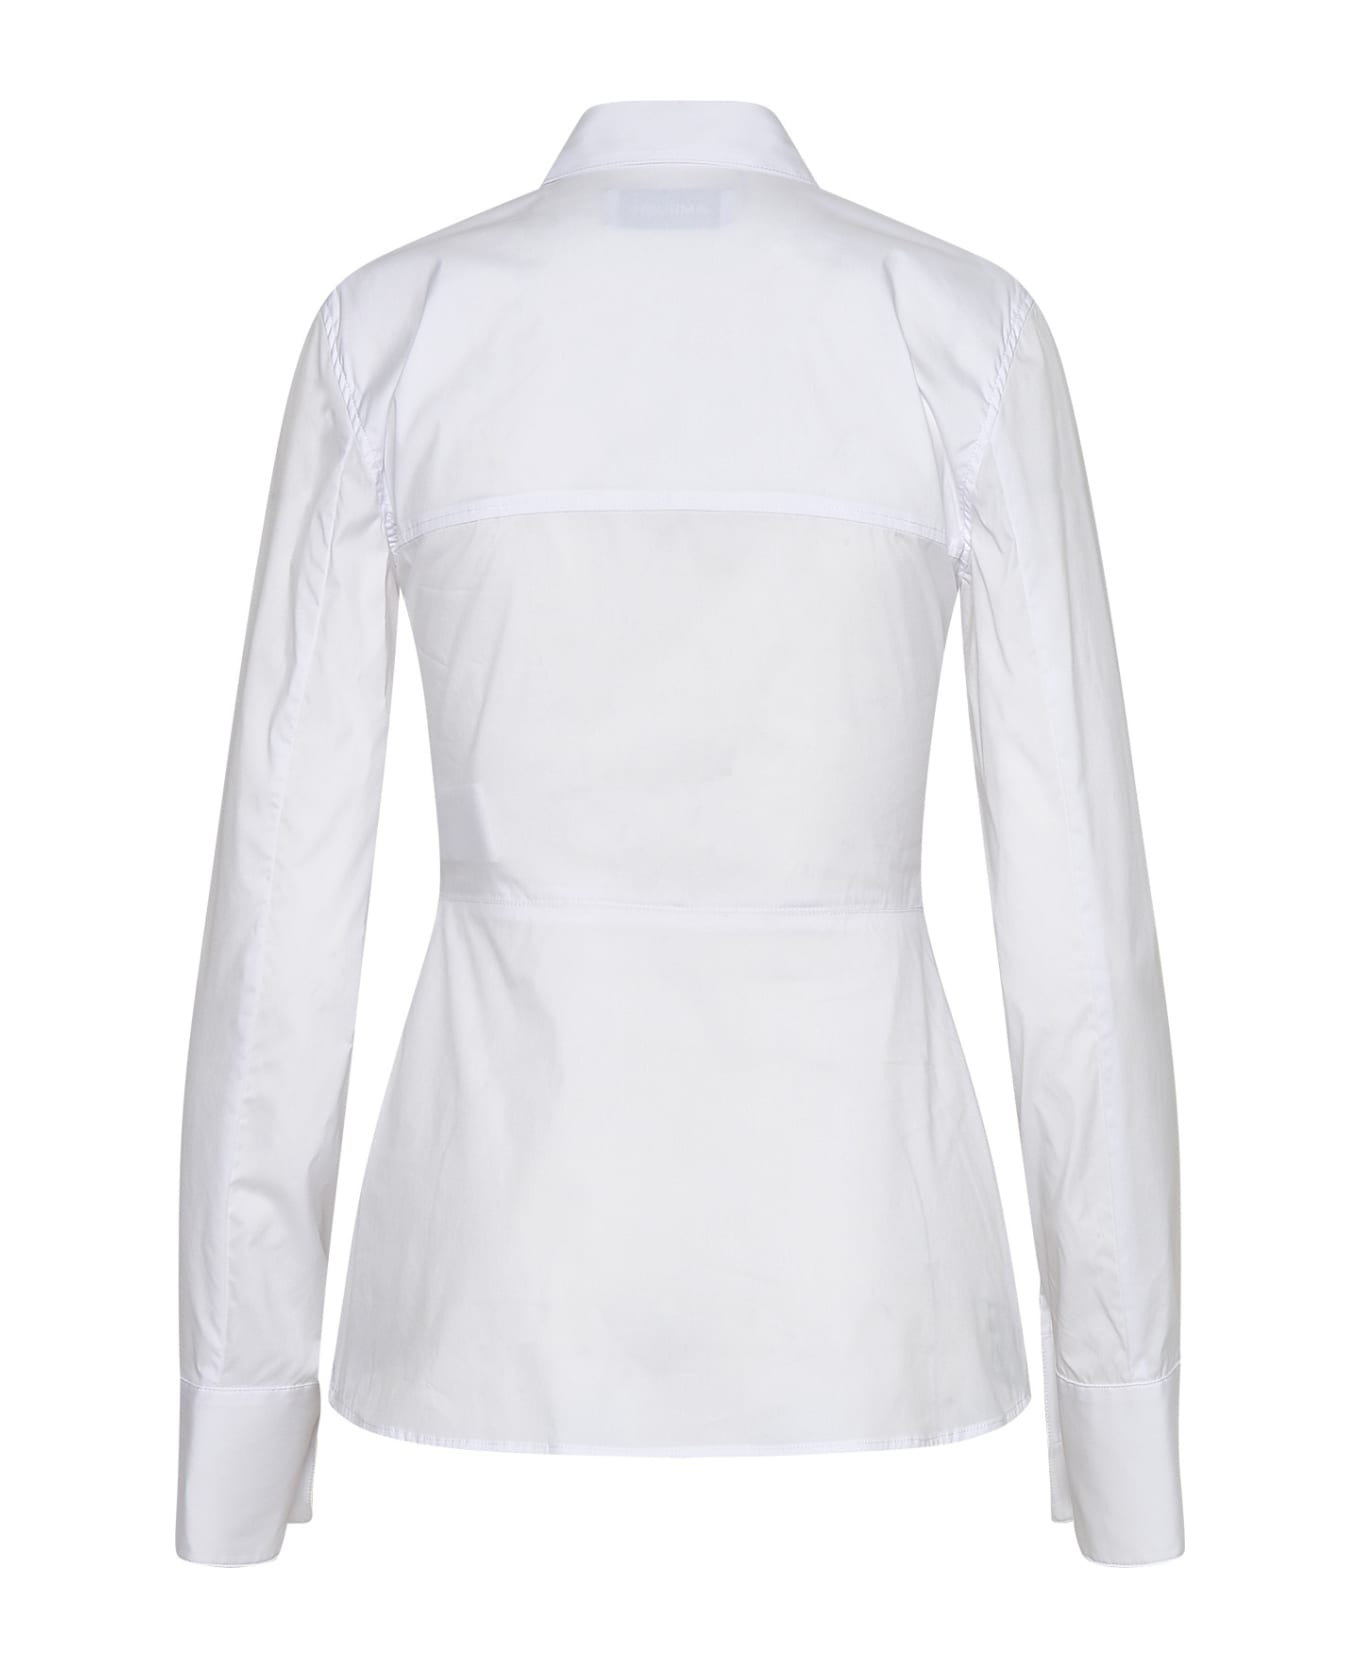 AMBUSH White Cotton Shirt - White シャツ